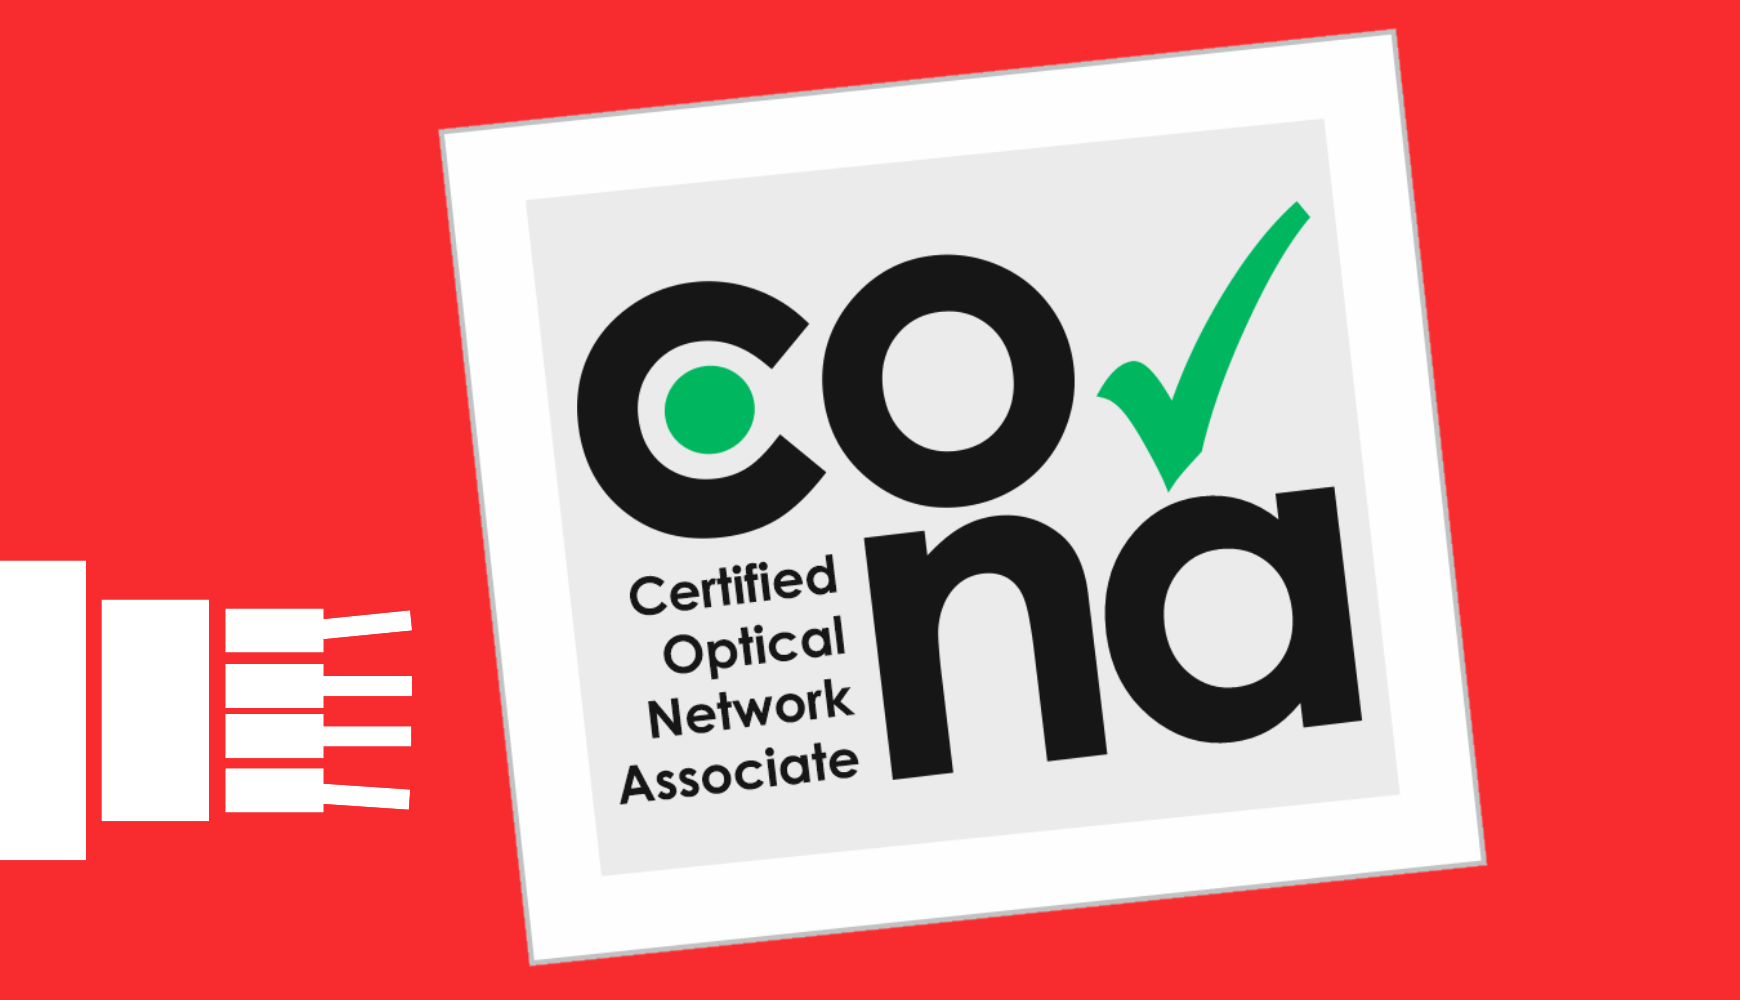 Certified Optical Network Associate